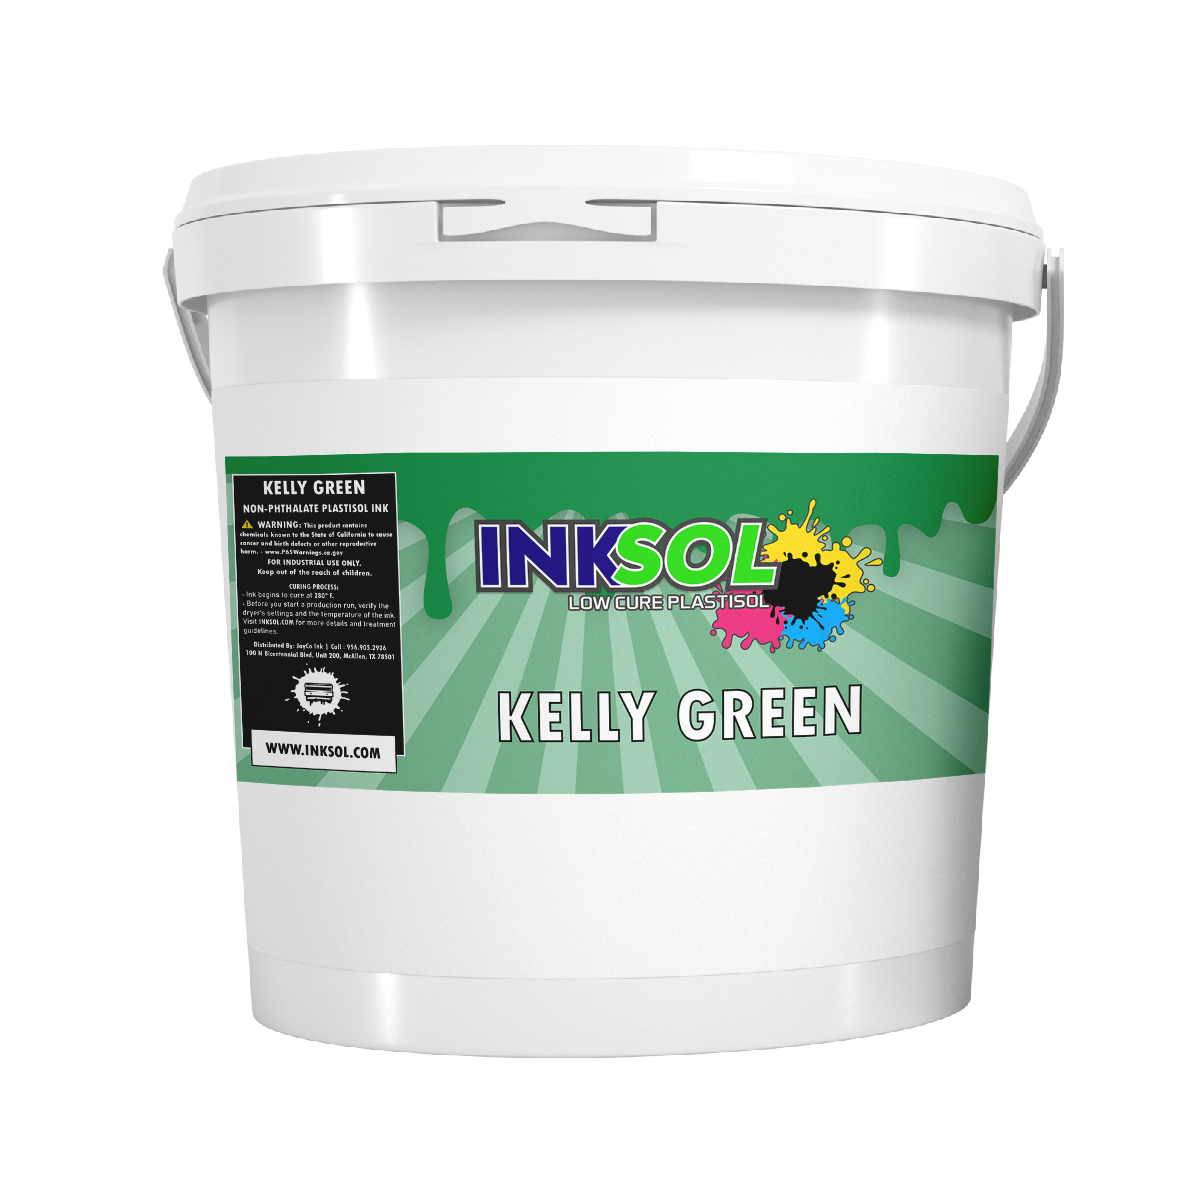 InkSol™ Low Cure Plastisol Kelly Green